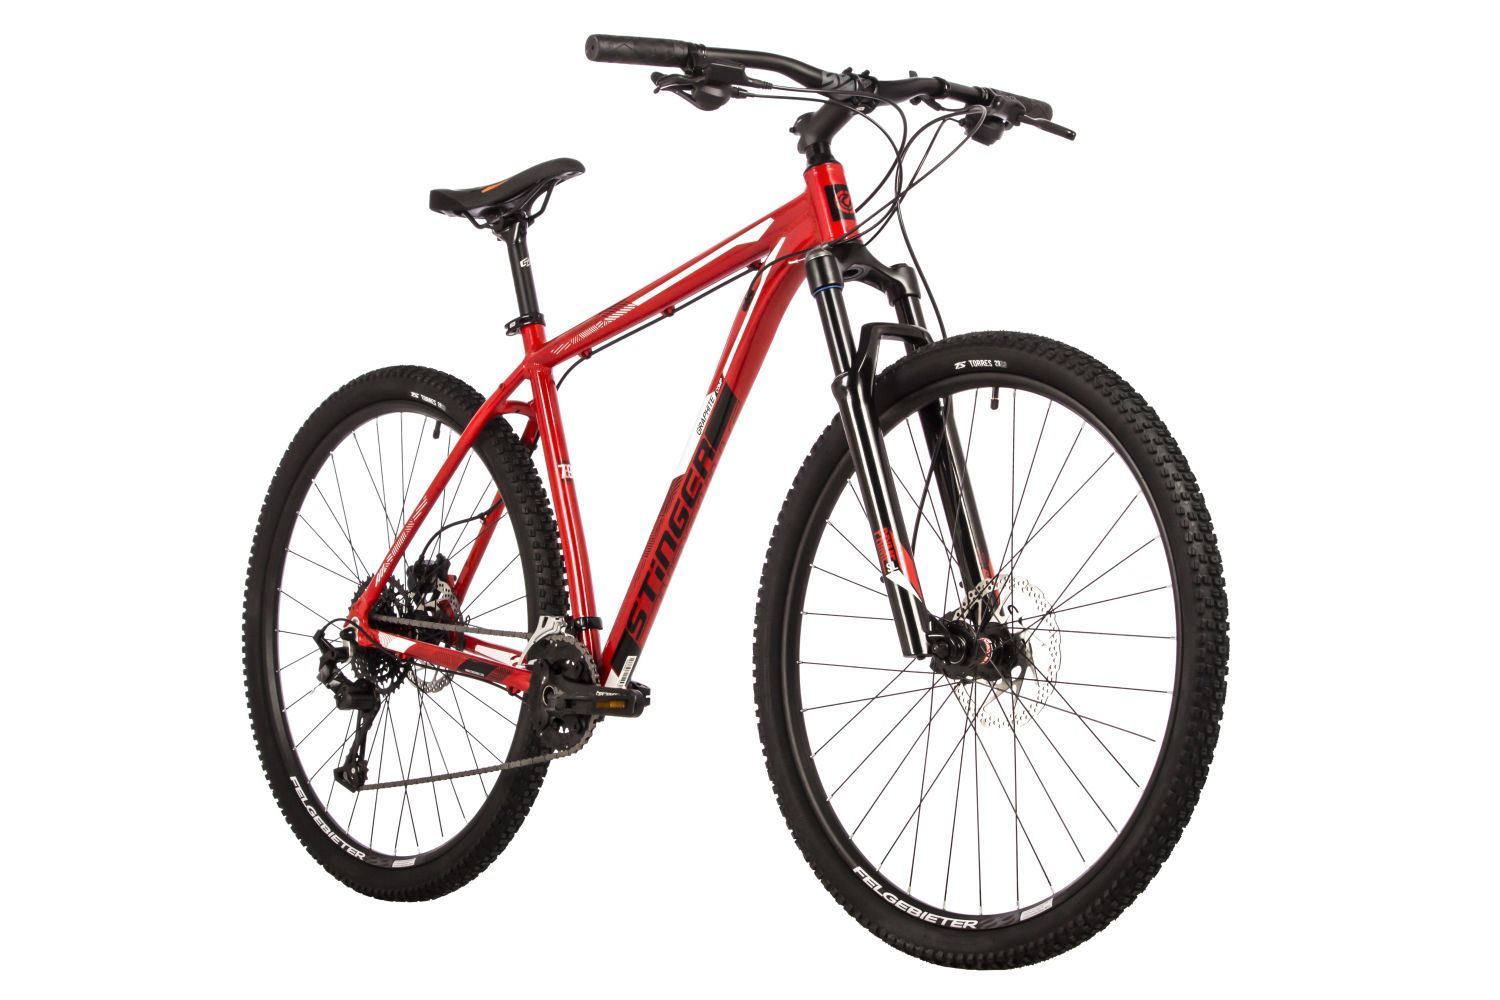 ВелосипедвзрослыйгорныйSTINGER29"GRAPHITECOMPскоростнойхардтейлнарост170-180см,18скоростей,алюминиеваярама18",красный